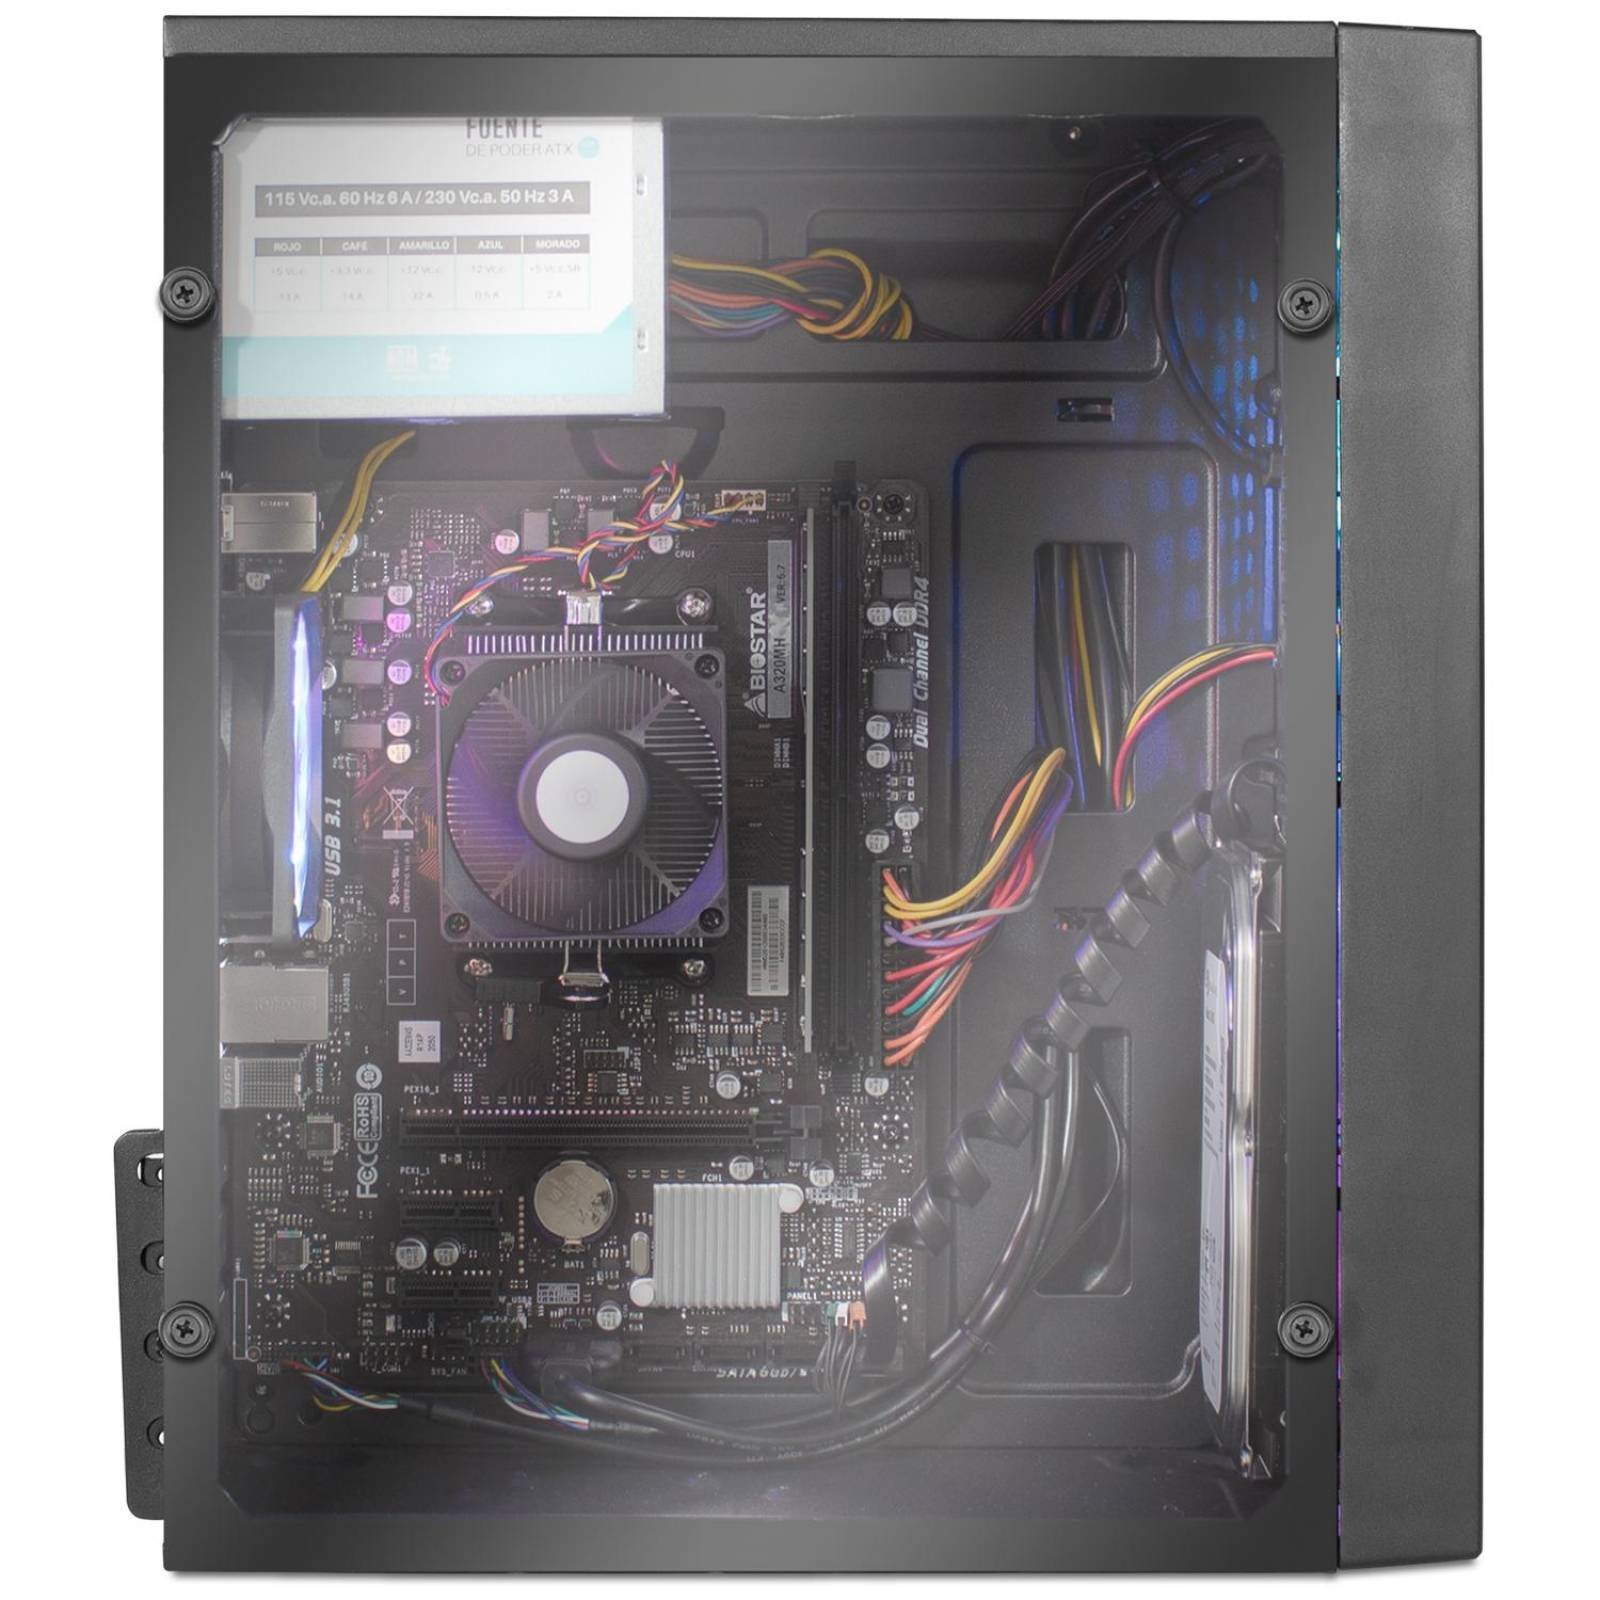 Xtreme PC Gamer AMD Radeon R5 A6 9500 8GB 1TB Monitor 21.5 Camara Web WIFI 